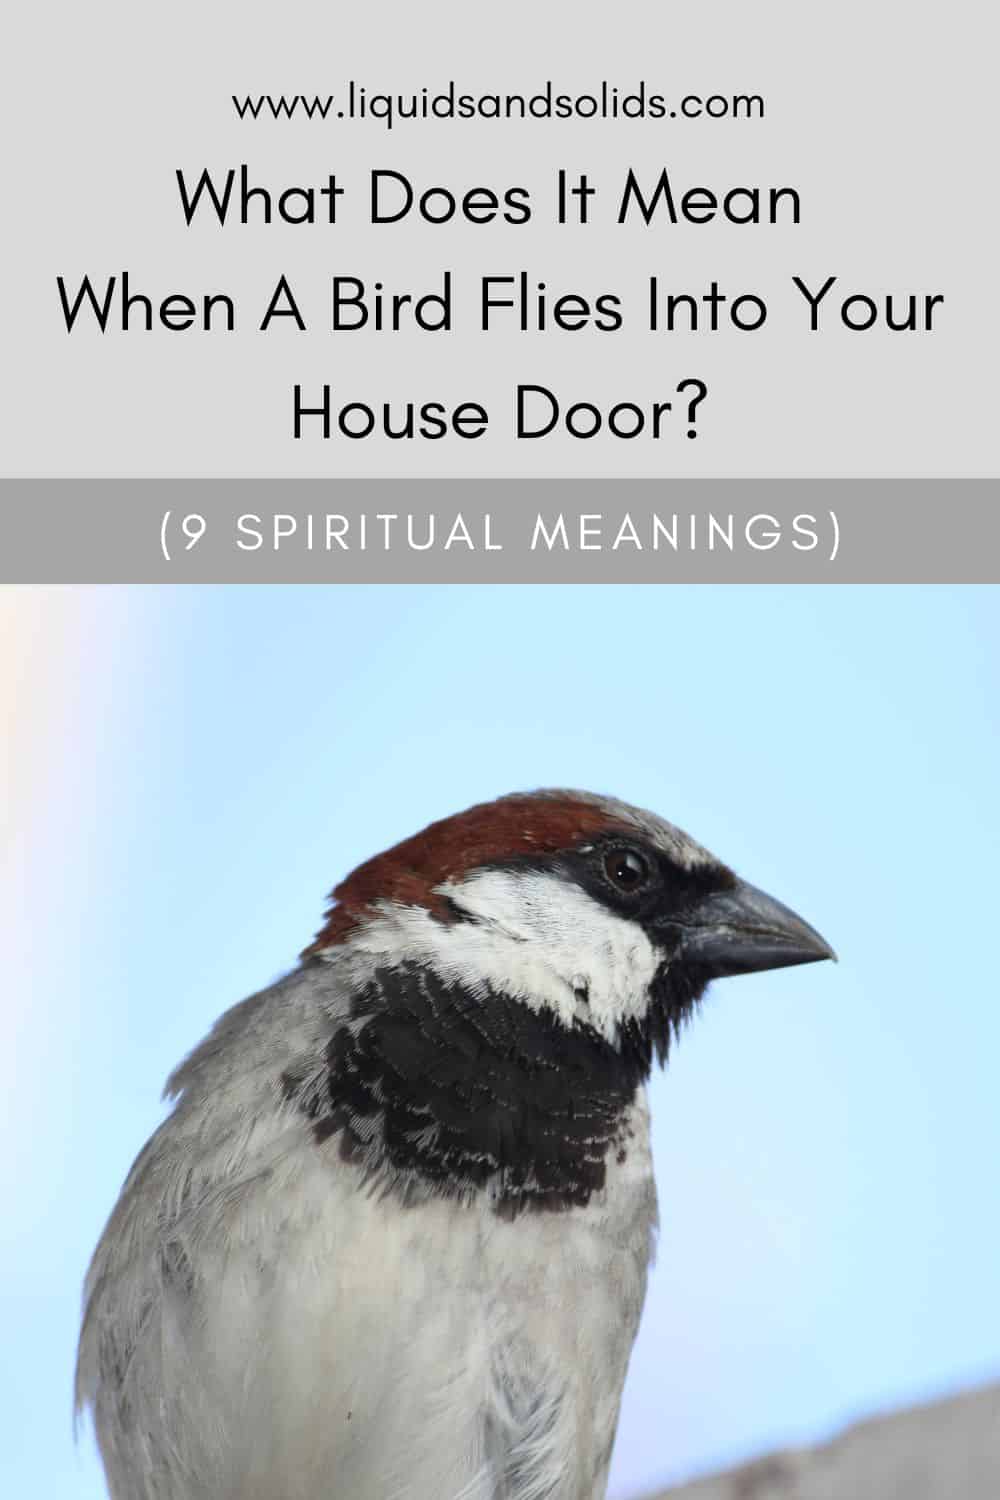  Mida tähendab see, kui lind lendab teie maja uksele? (9 vaimset tähendust)